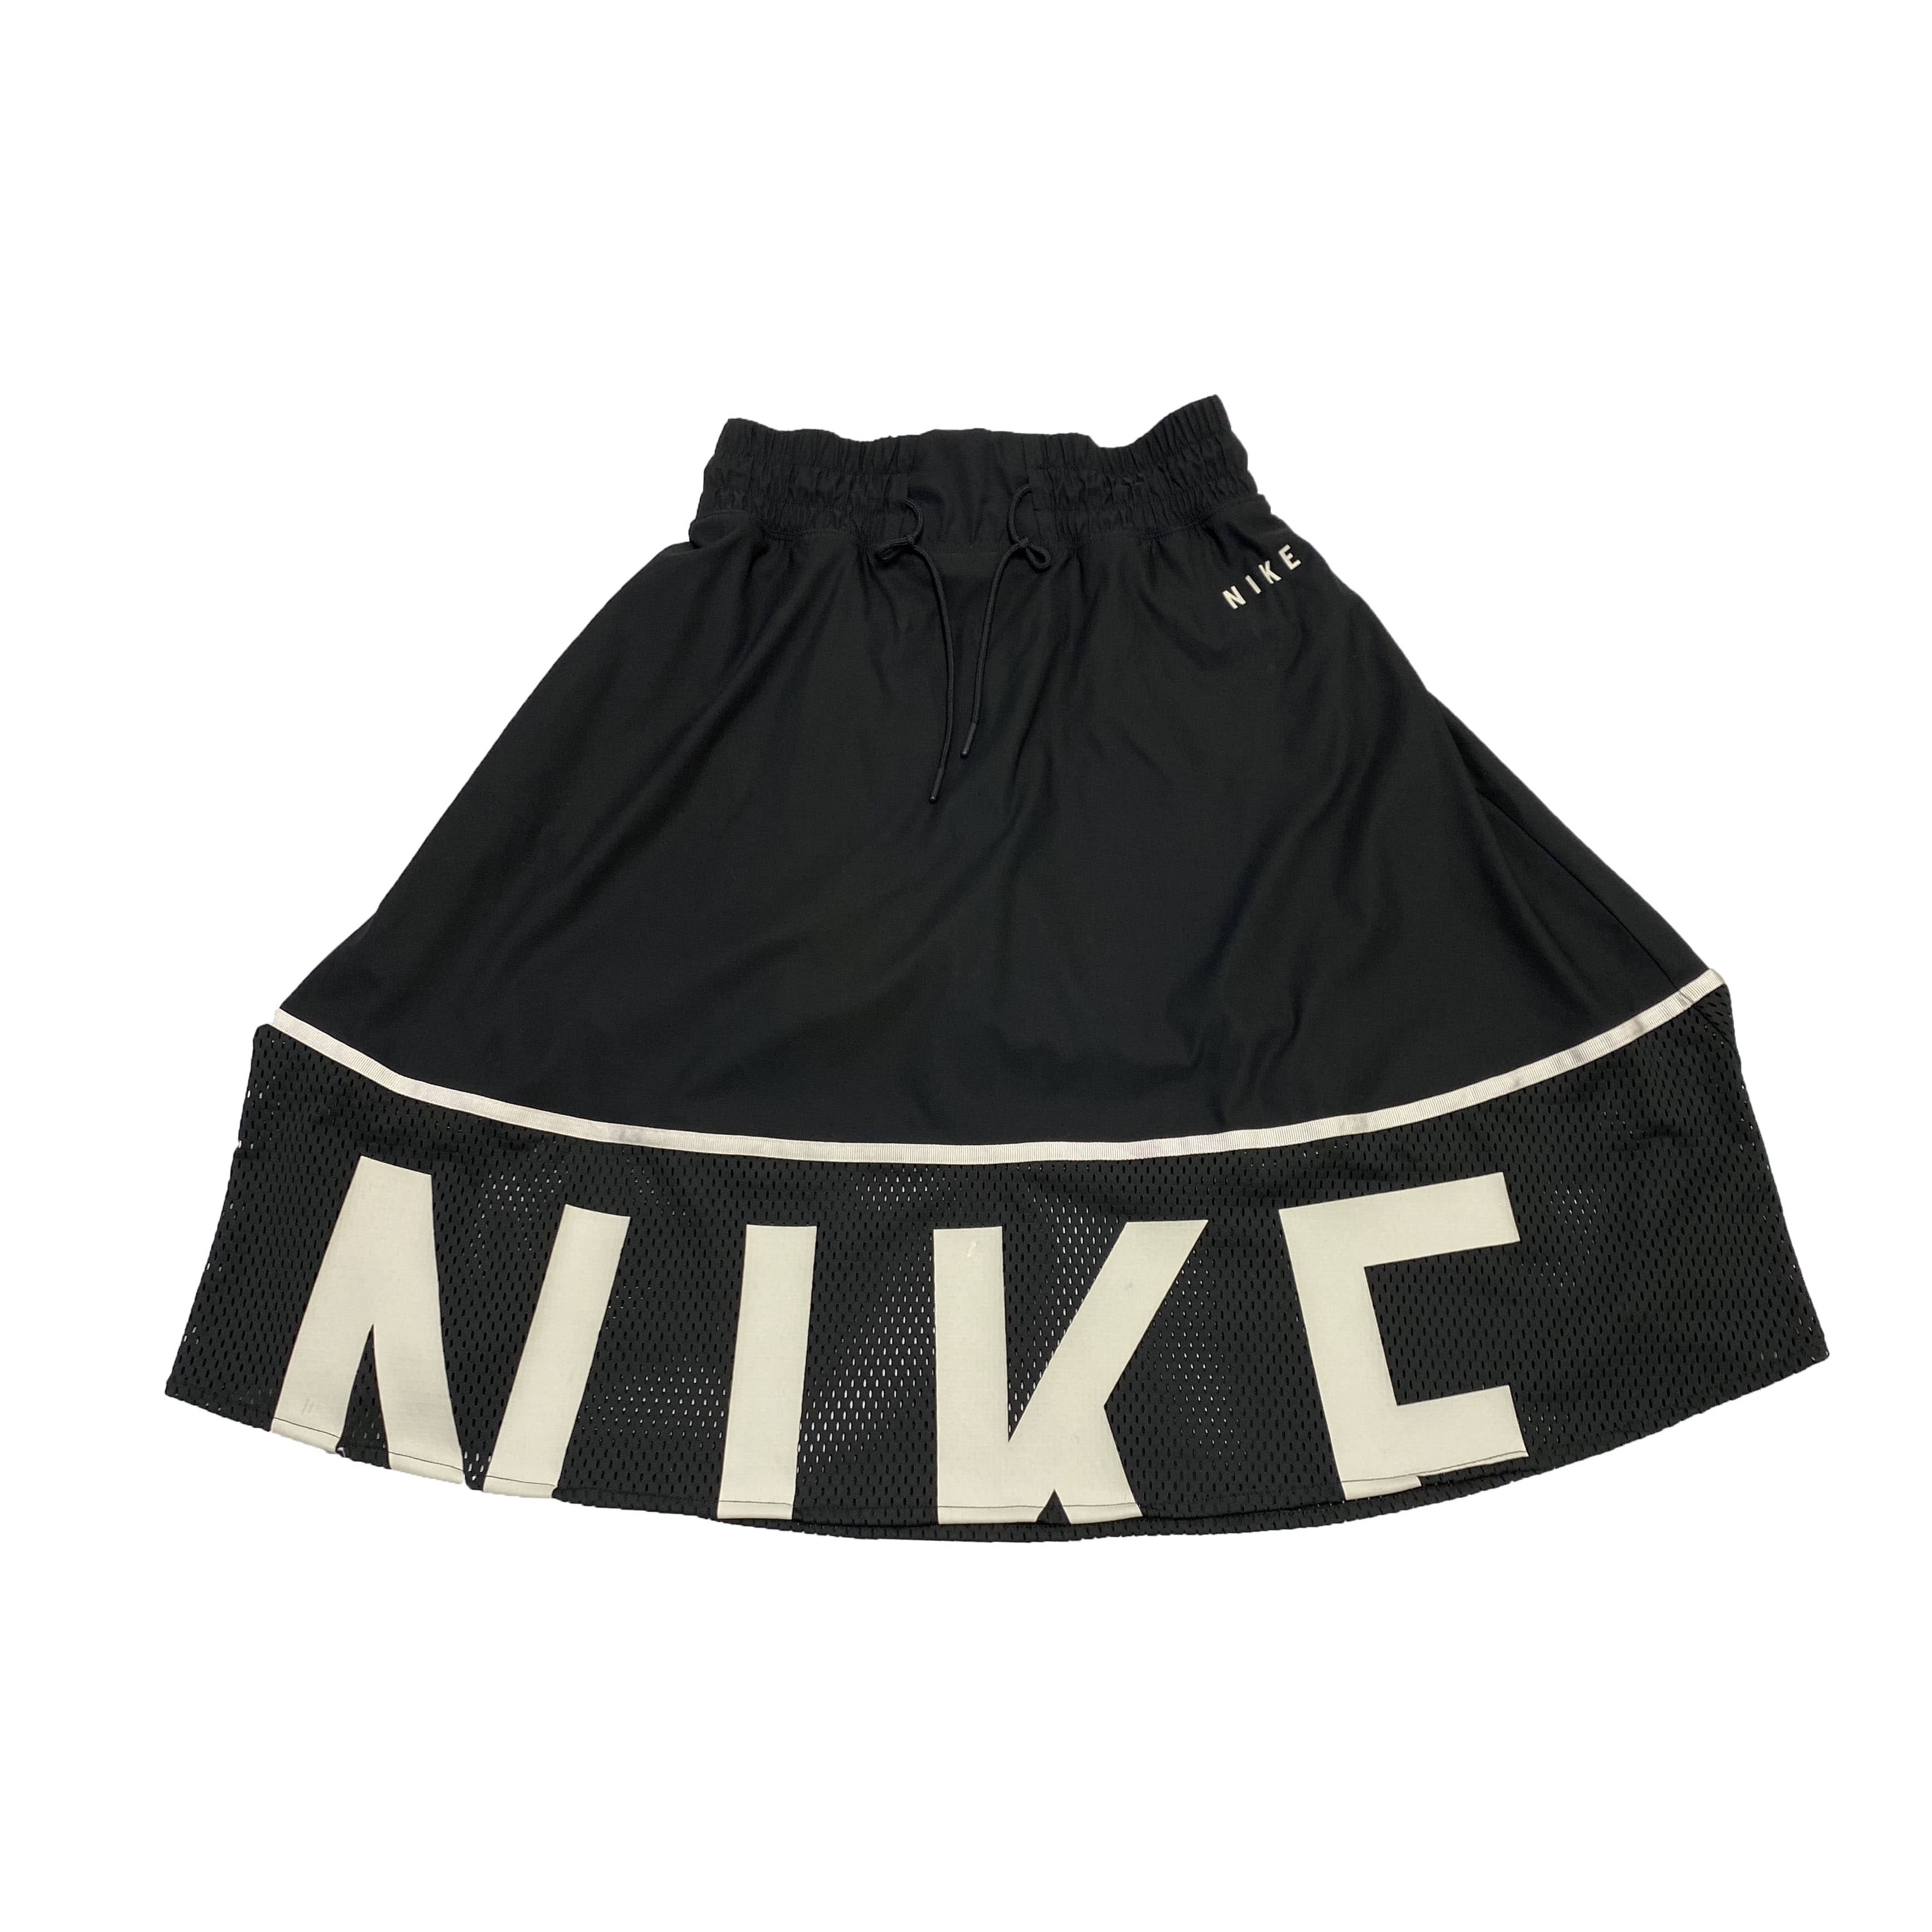 [Nike] Black Short Skirt - Size S